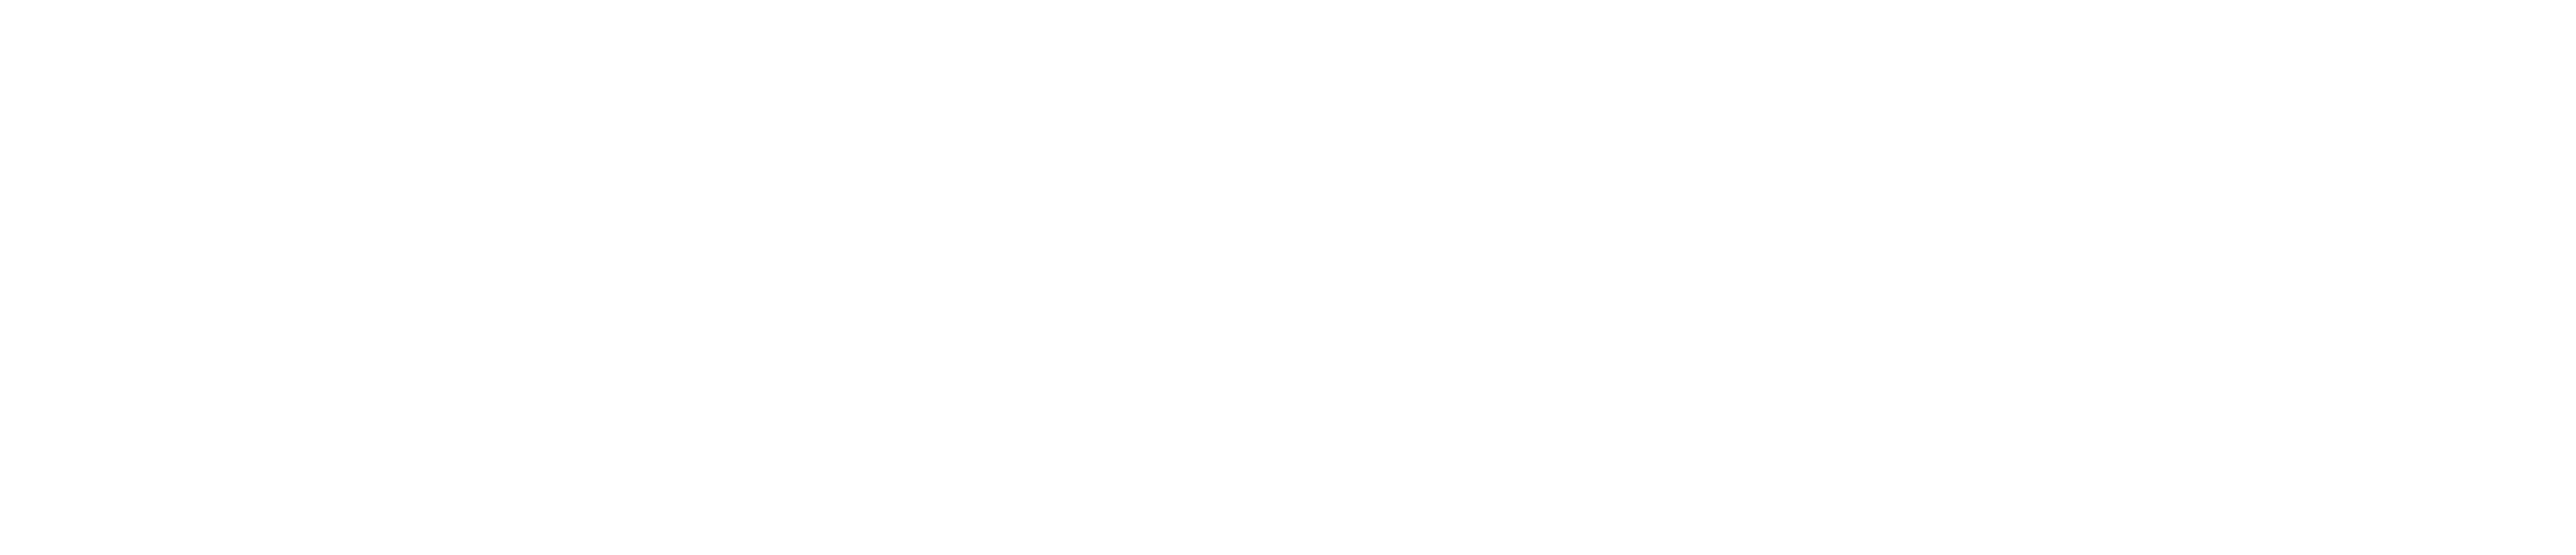 Logo Engepred